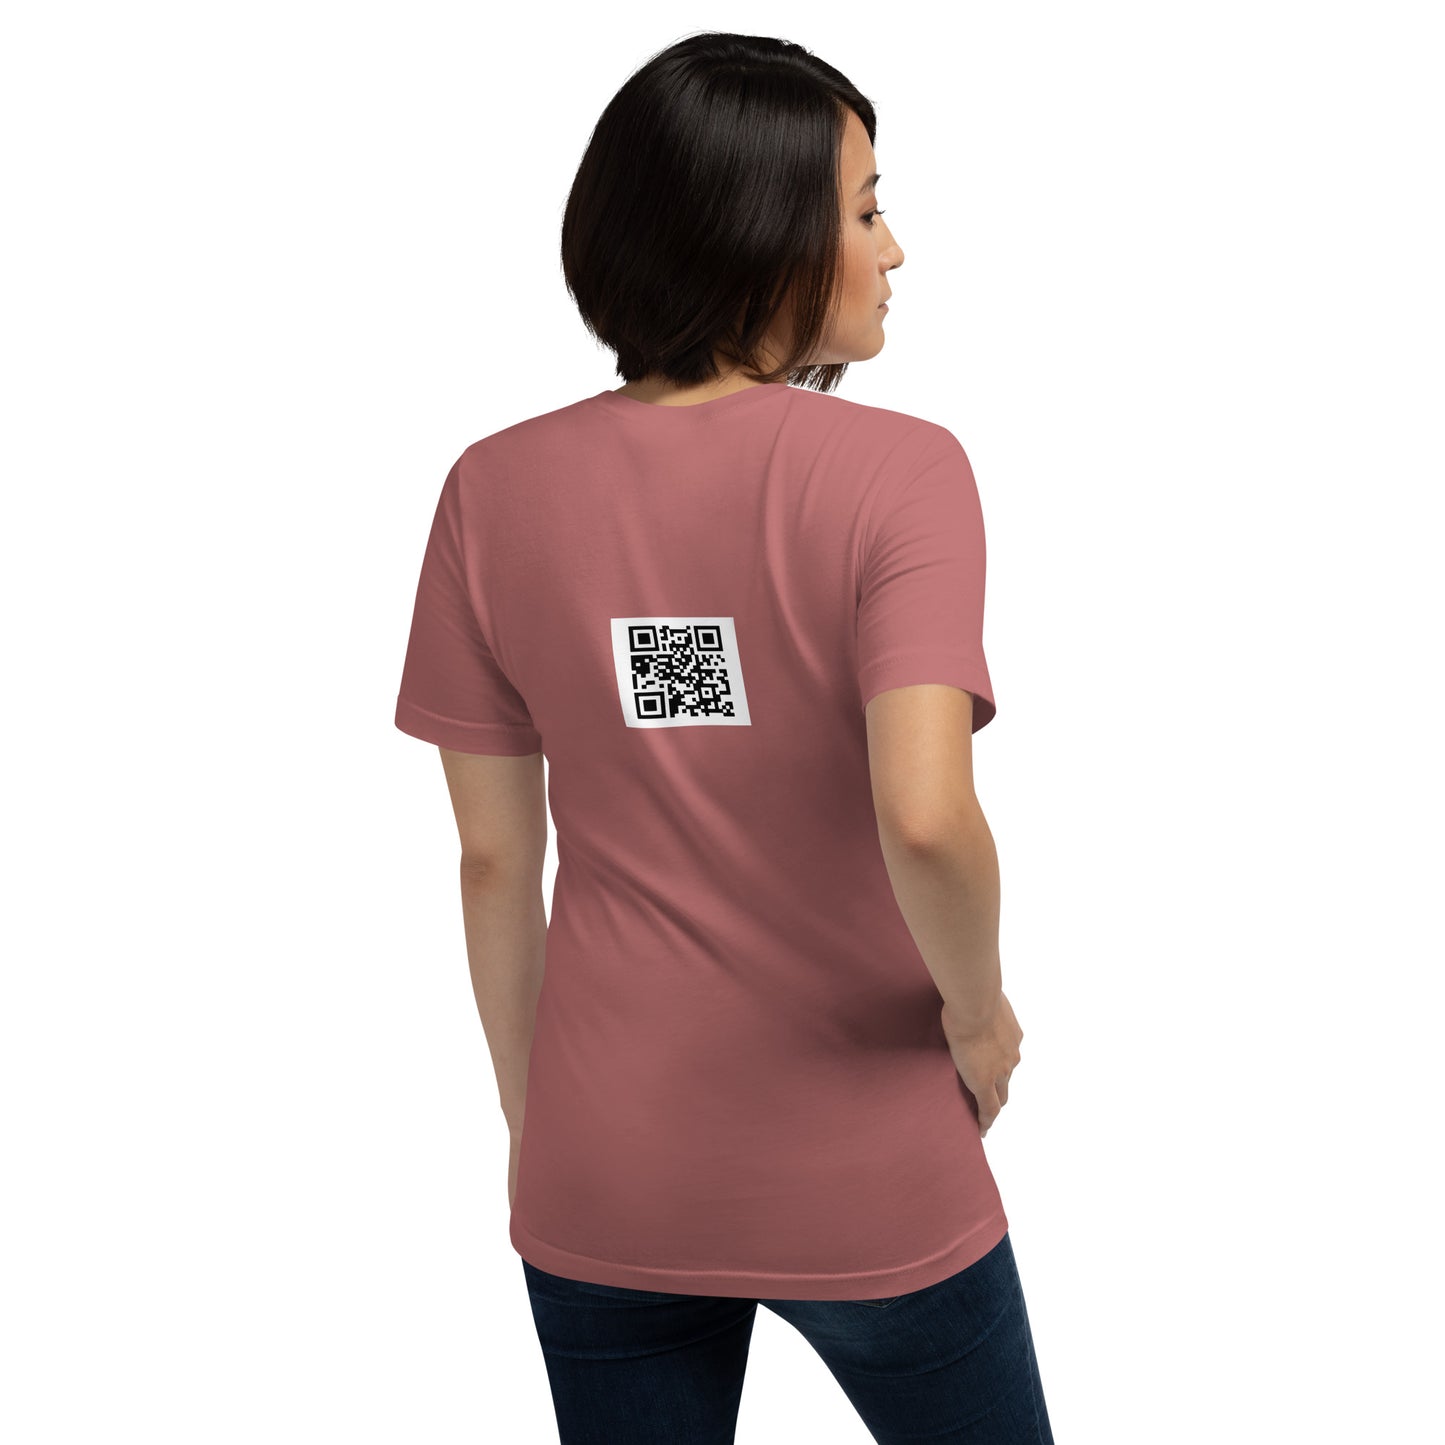 Heat Tracer highheatrichie Unisex t-shirt